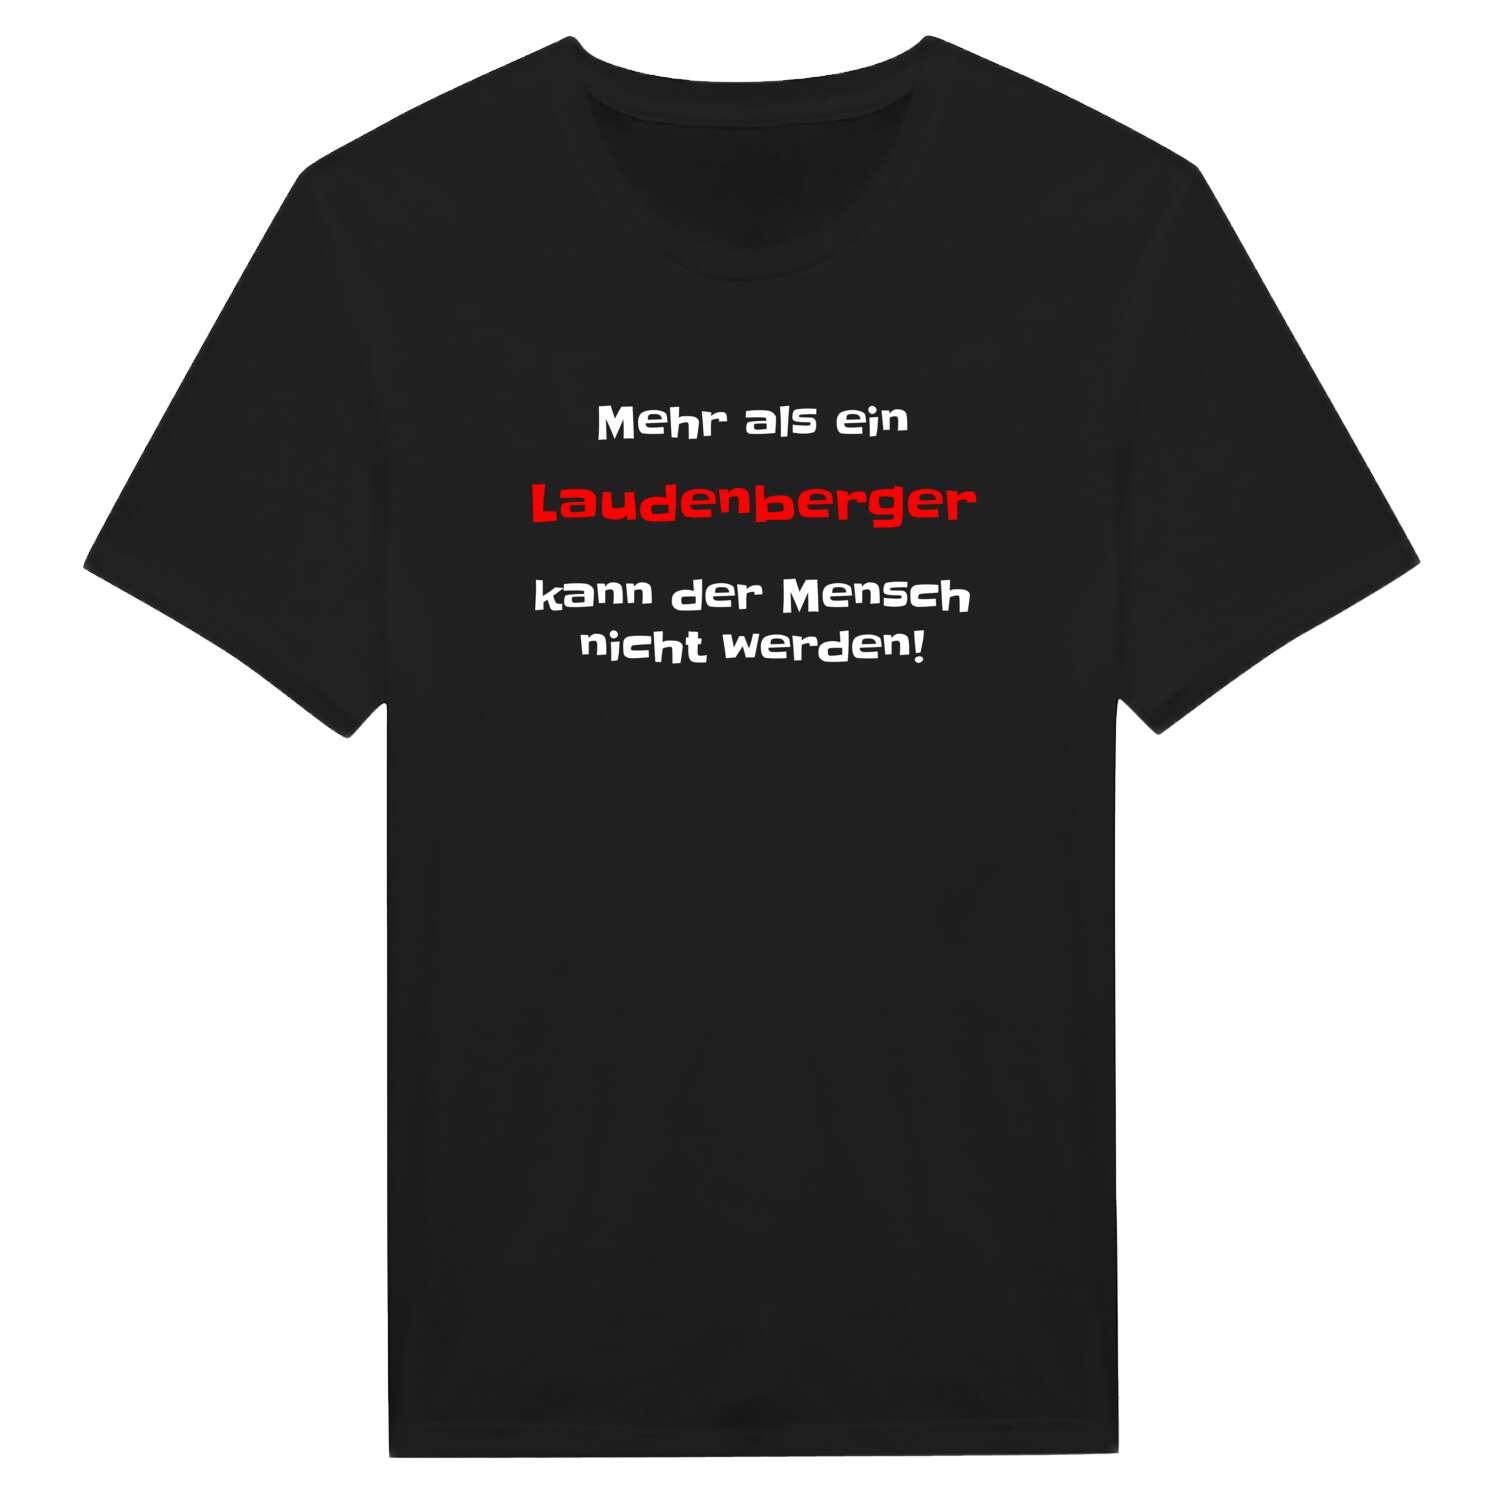 Laudenberg T-Shirt »Mehr als ein«